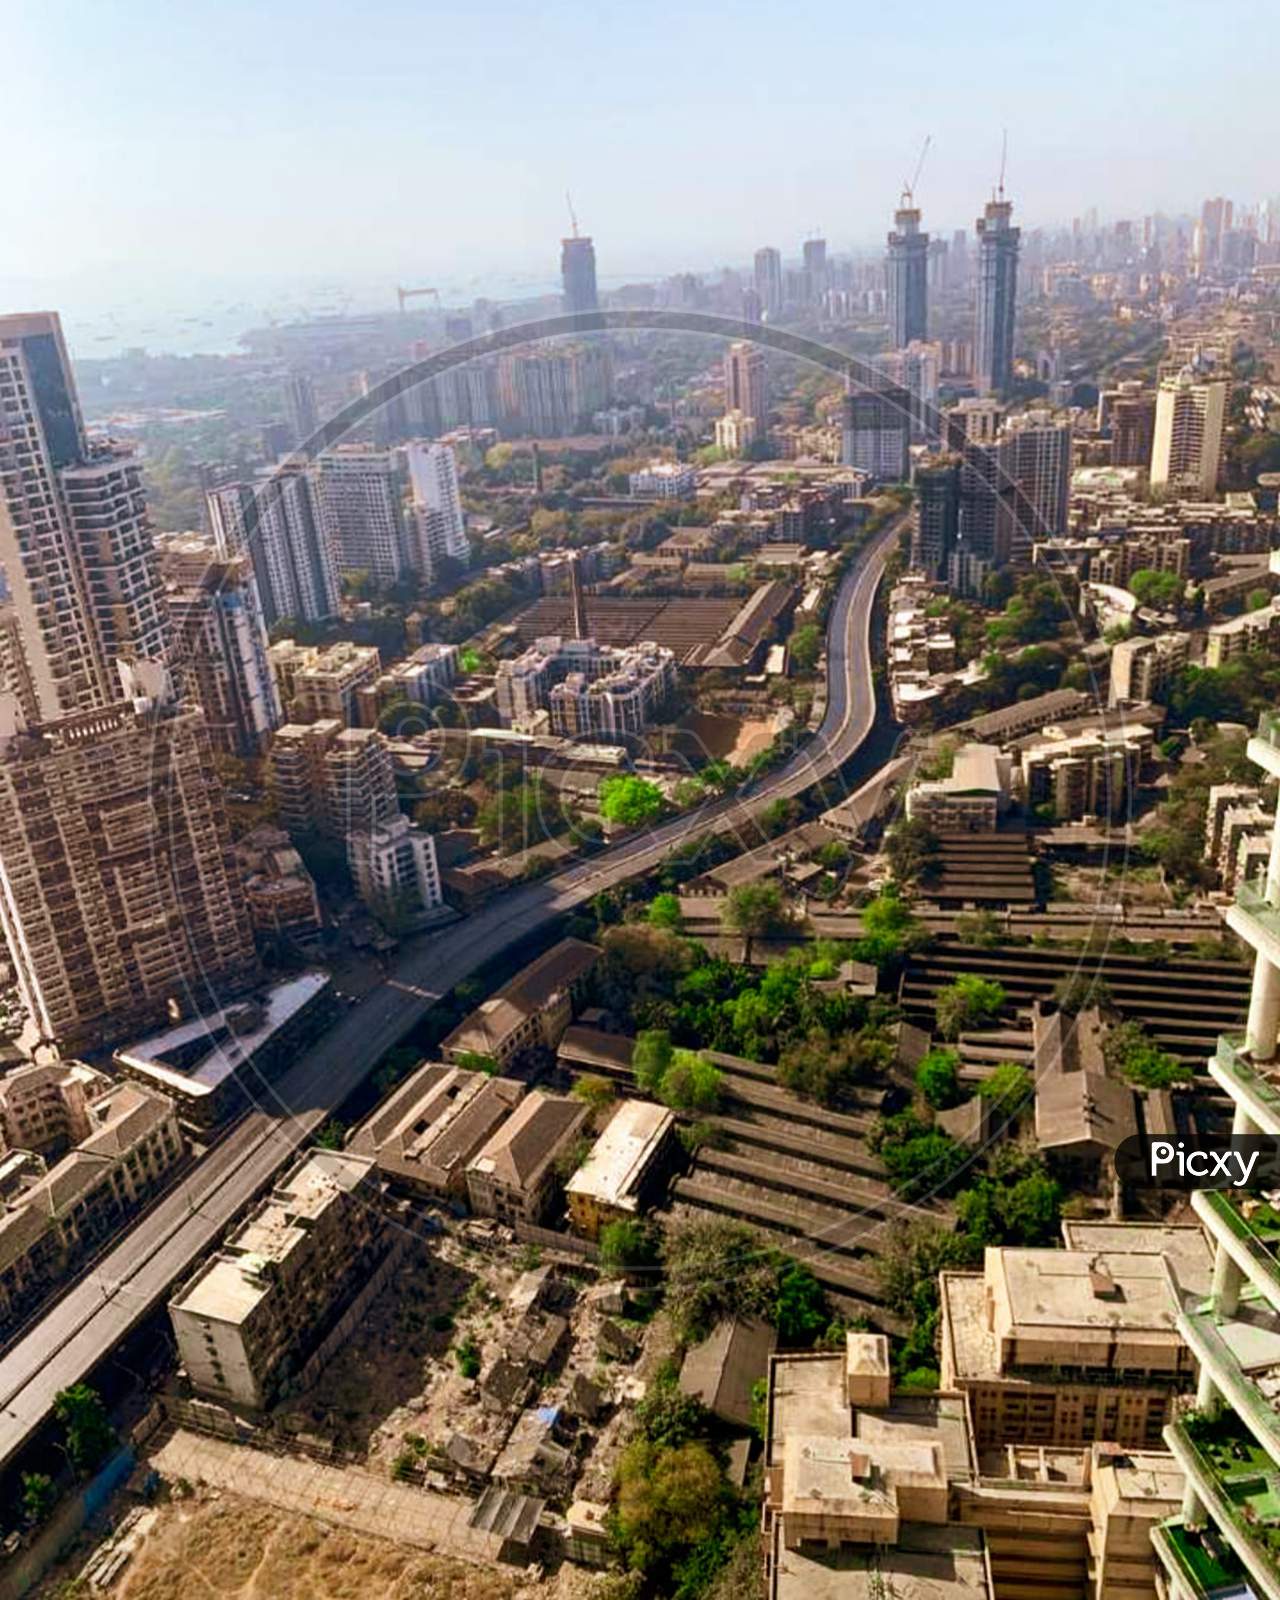 Mumbai from above